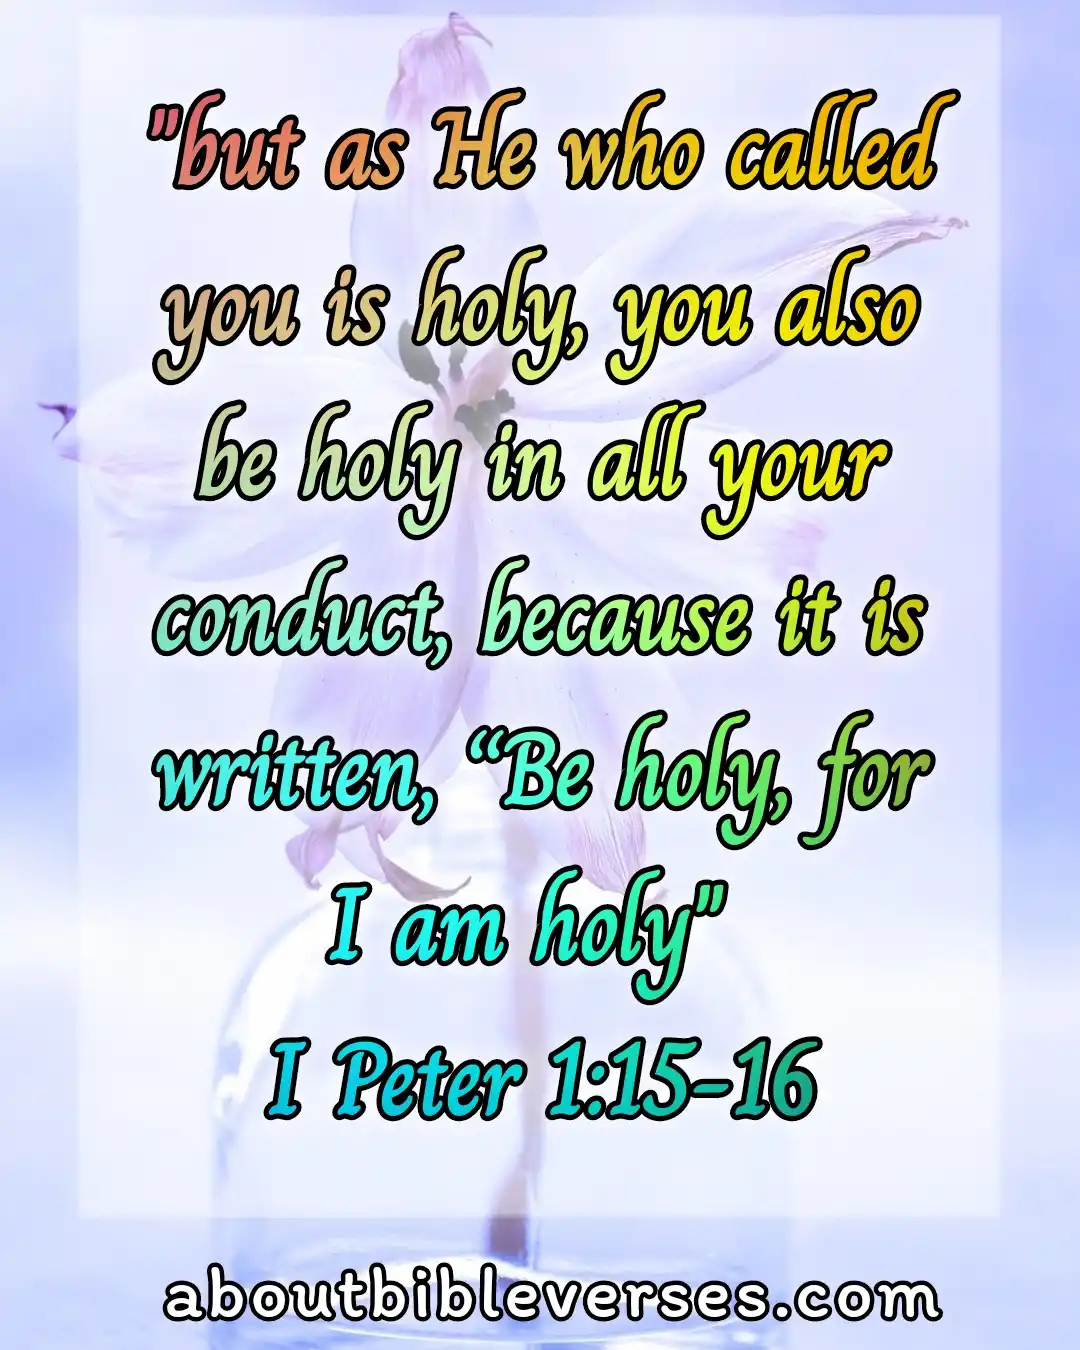 today bible verse (1 Peter 1:15-16)